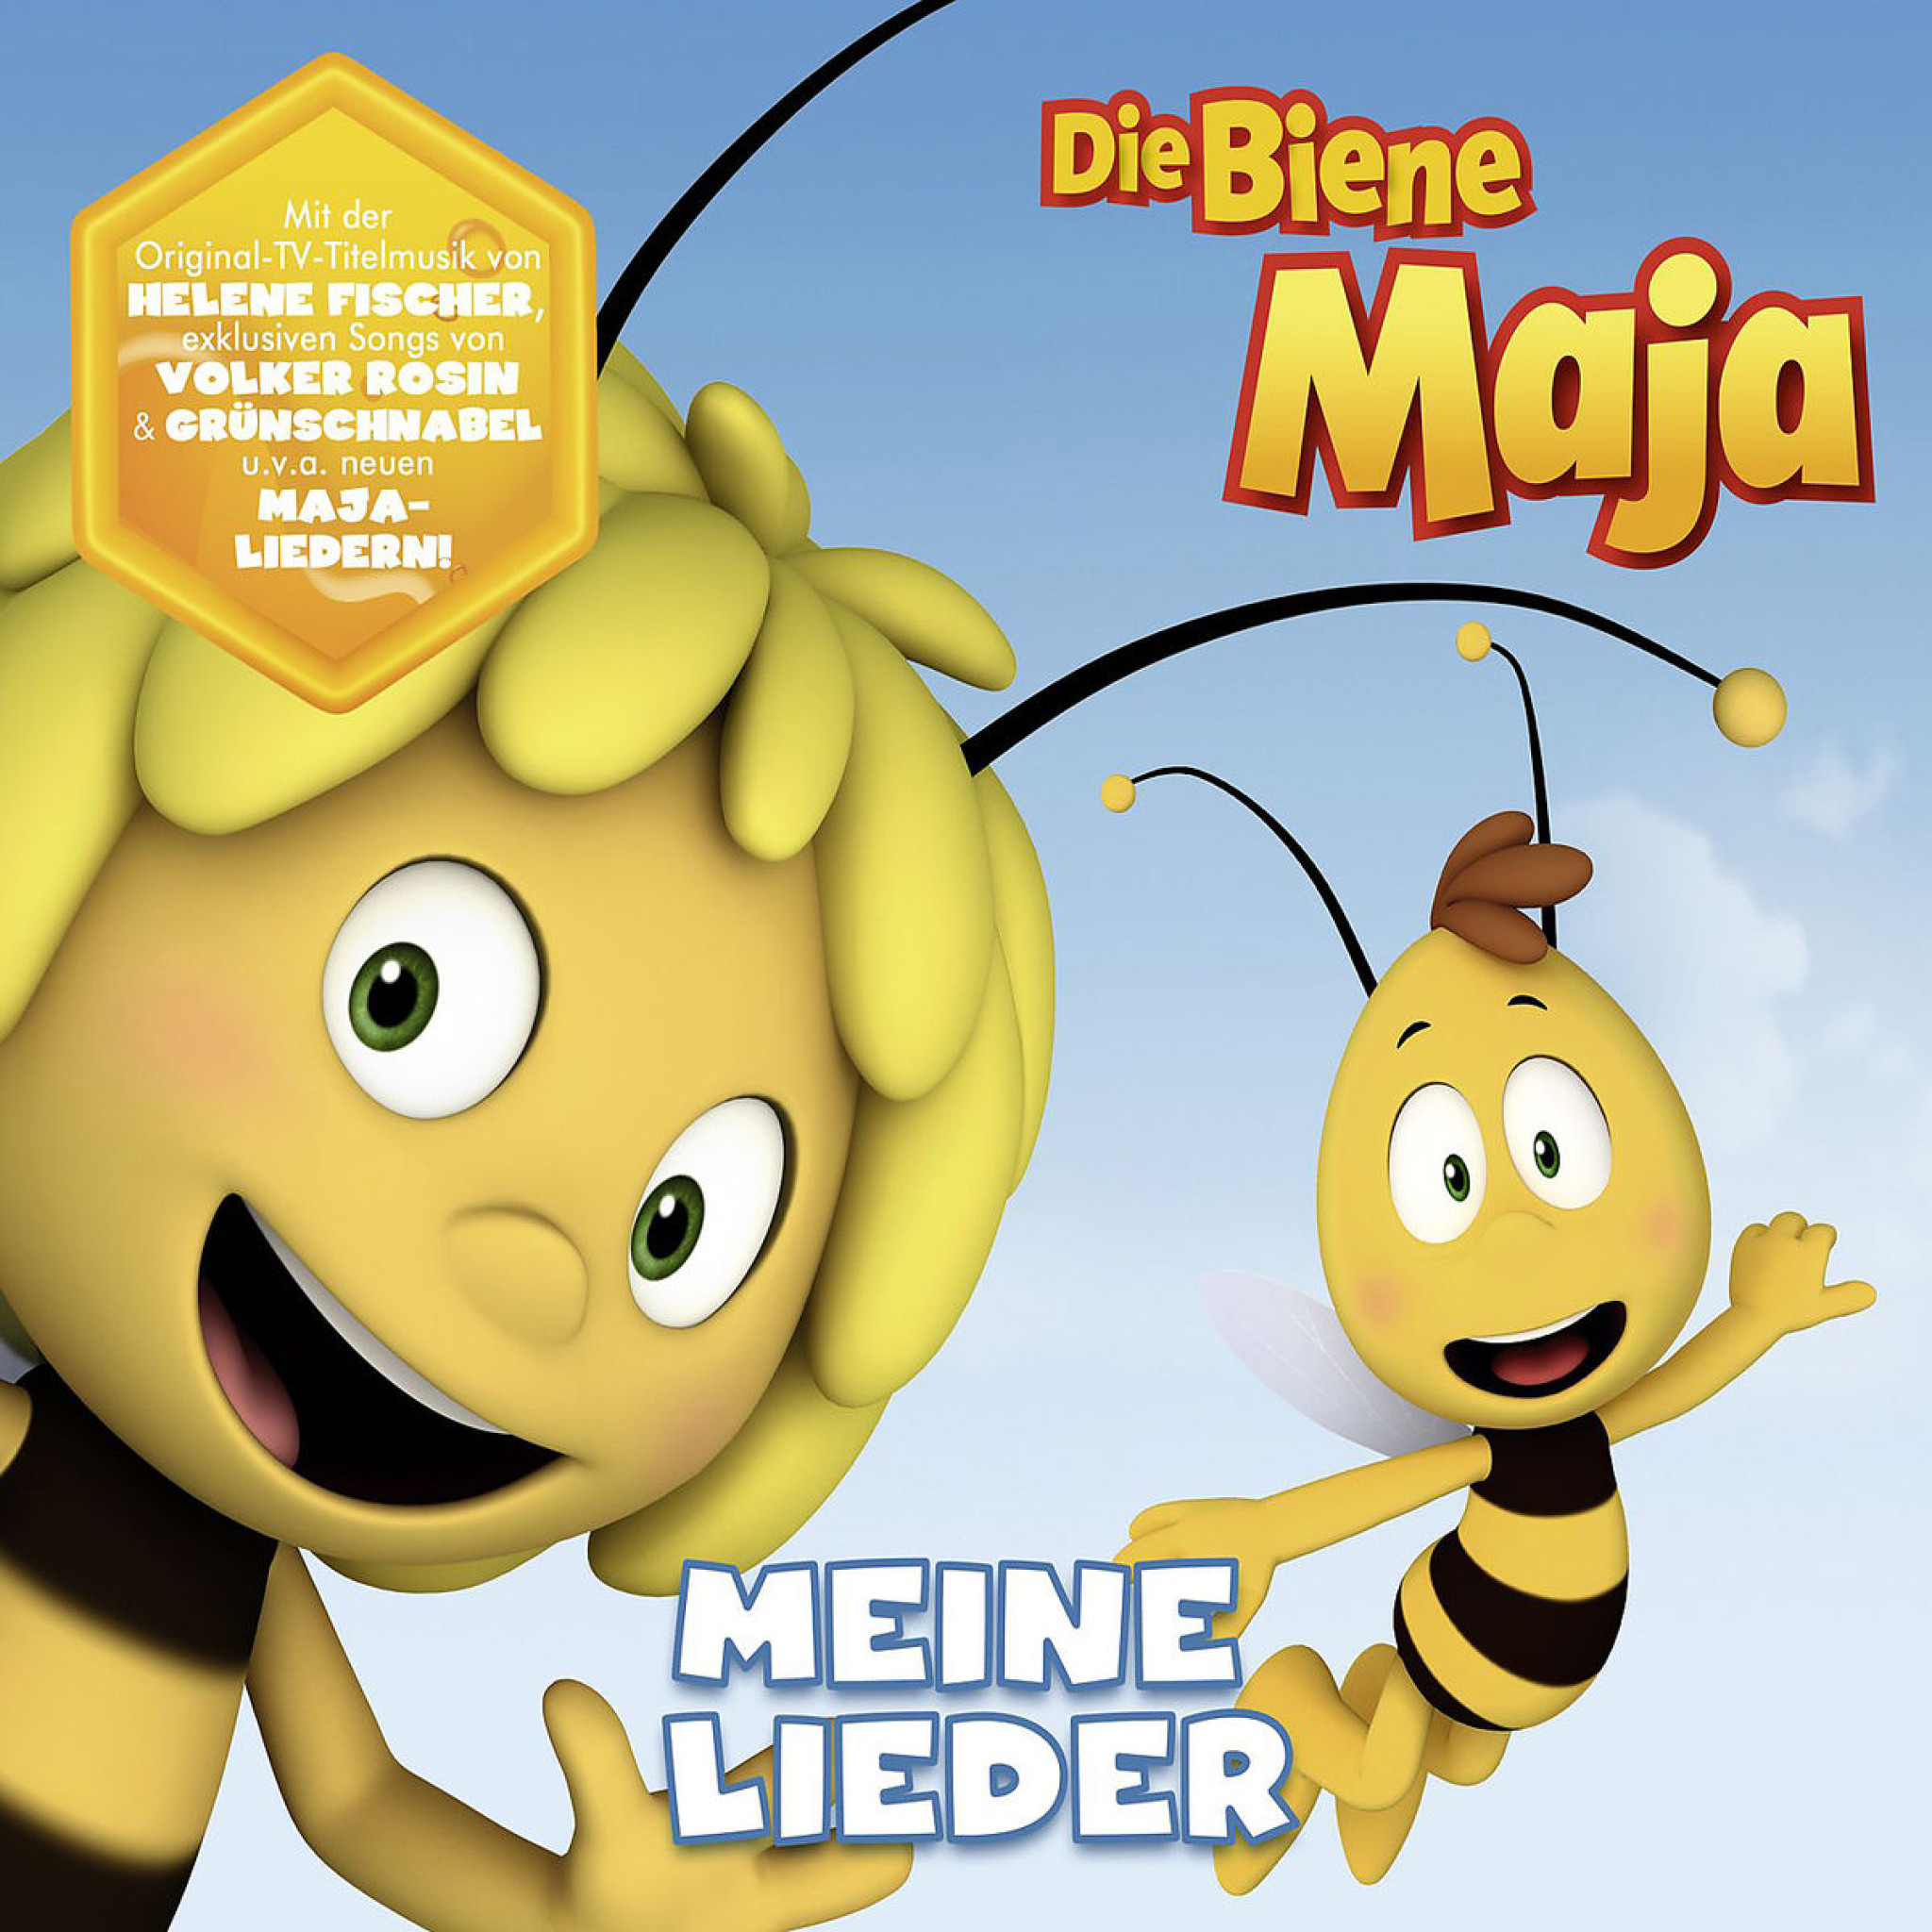 Die Biene Maja - Meine Lieder: Various Artists